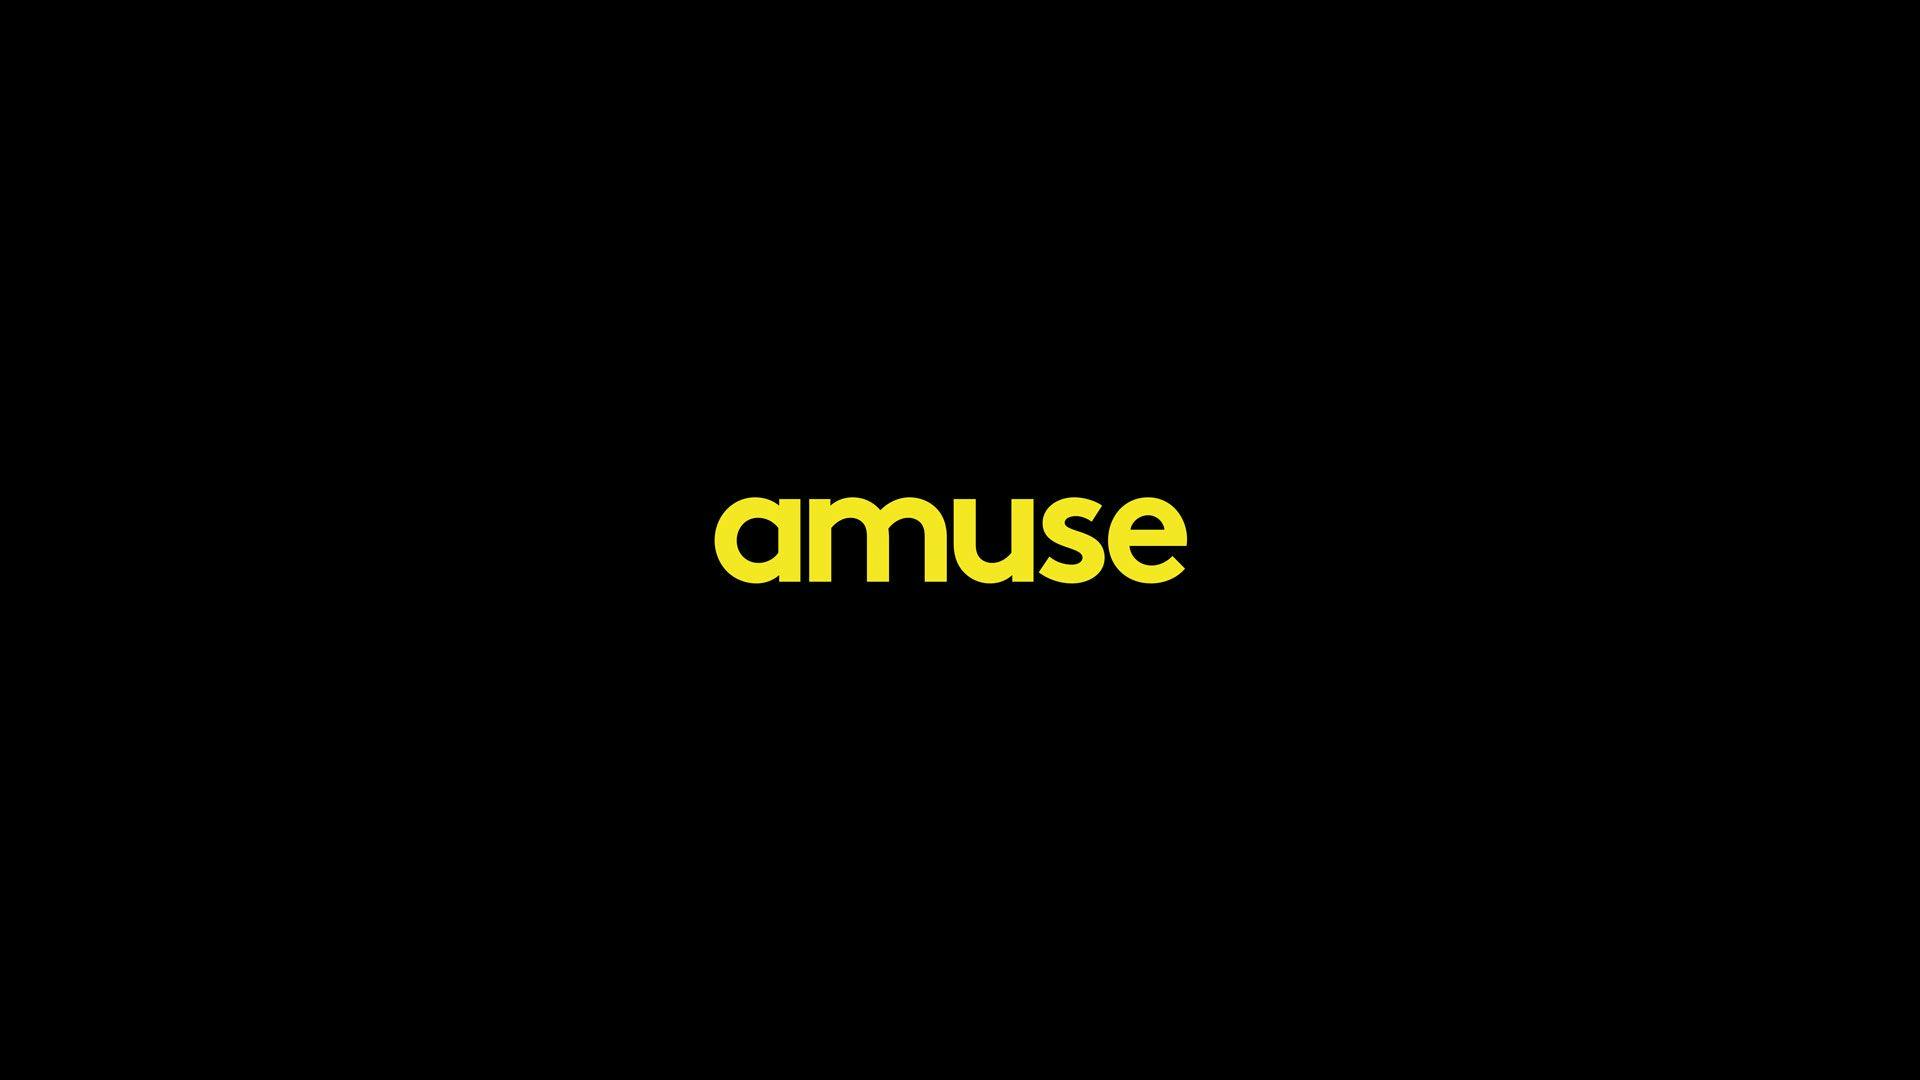 Amuse yellow logo on black background